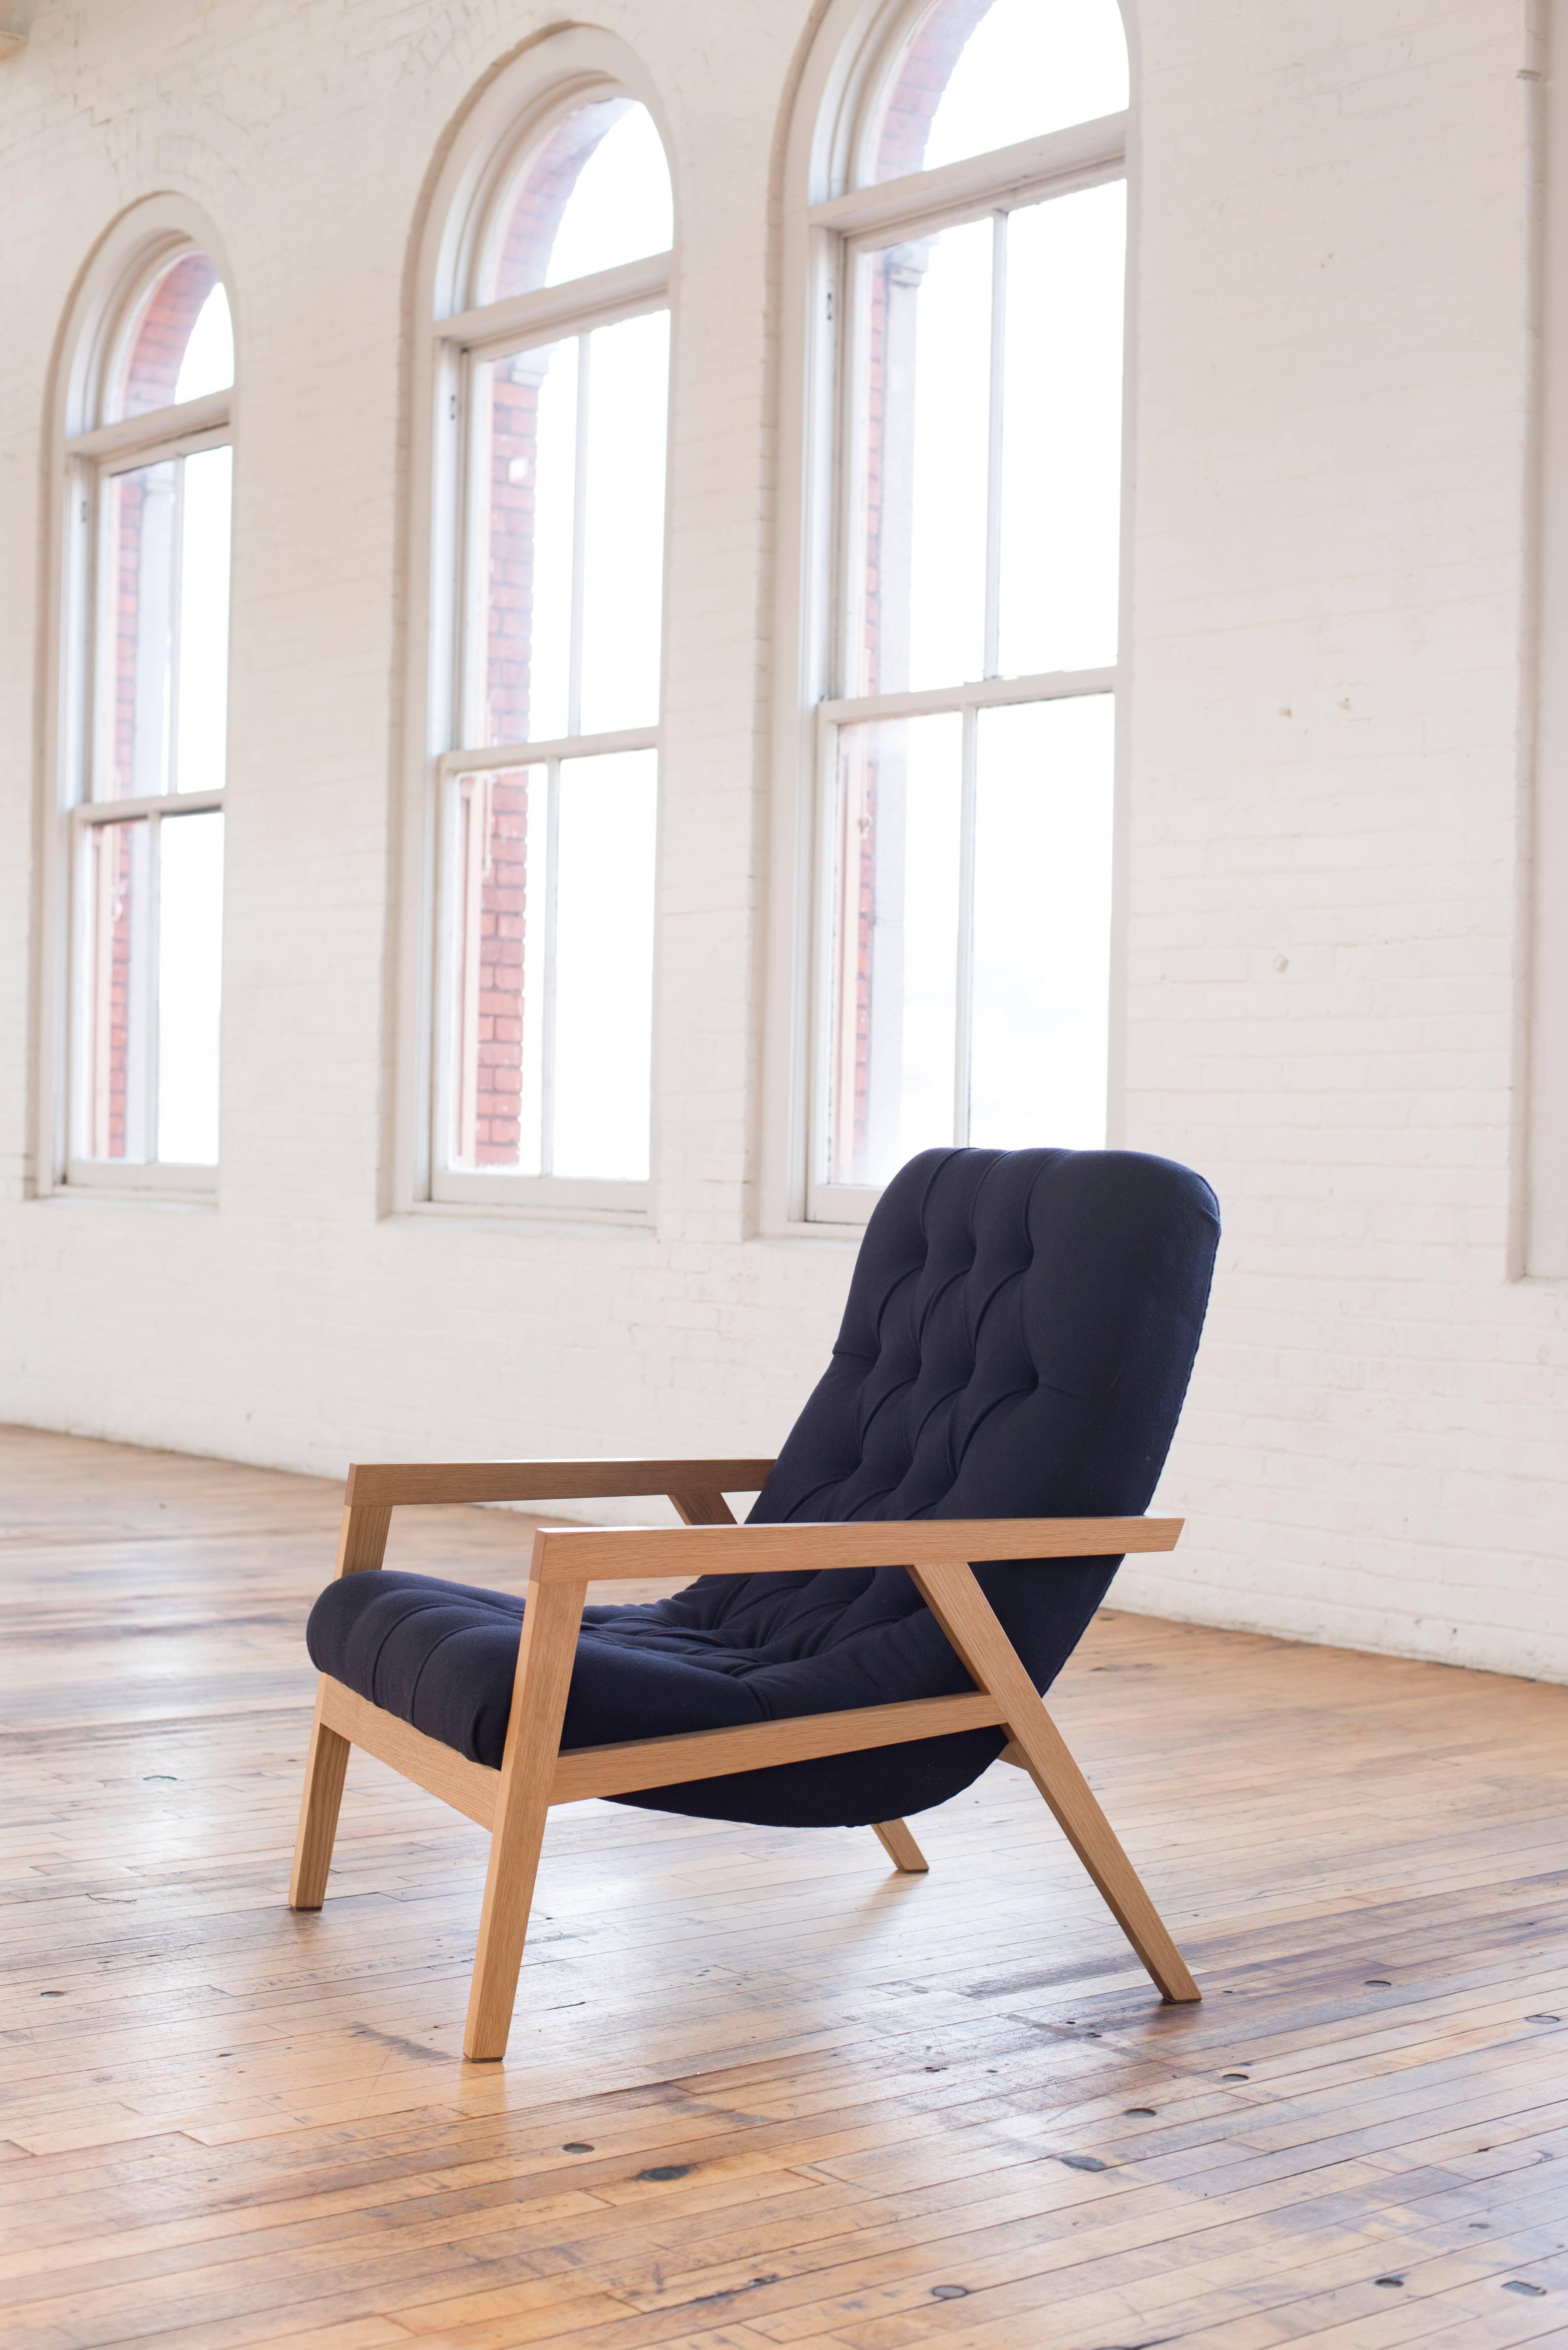 Le Regina Lounge est un fauteuil de salon moderne et contemporain fabriqué à la main. Son cadre en bois massif abrite une coque en contreplaqué stratifié aux courbes simples, cachée sous des couches de mousse et de cuir ou de laine traditionnelle